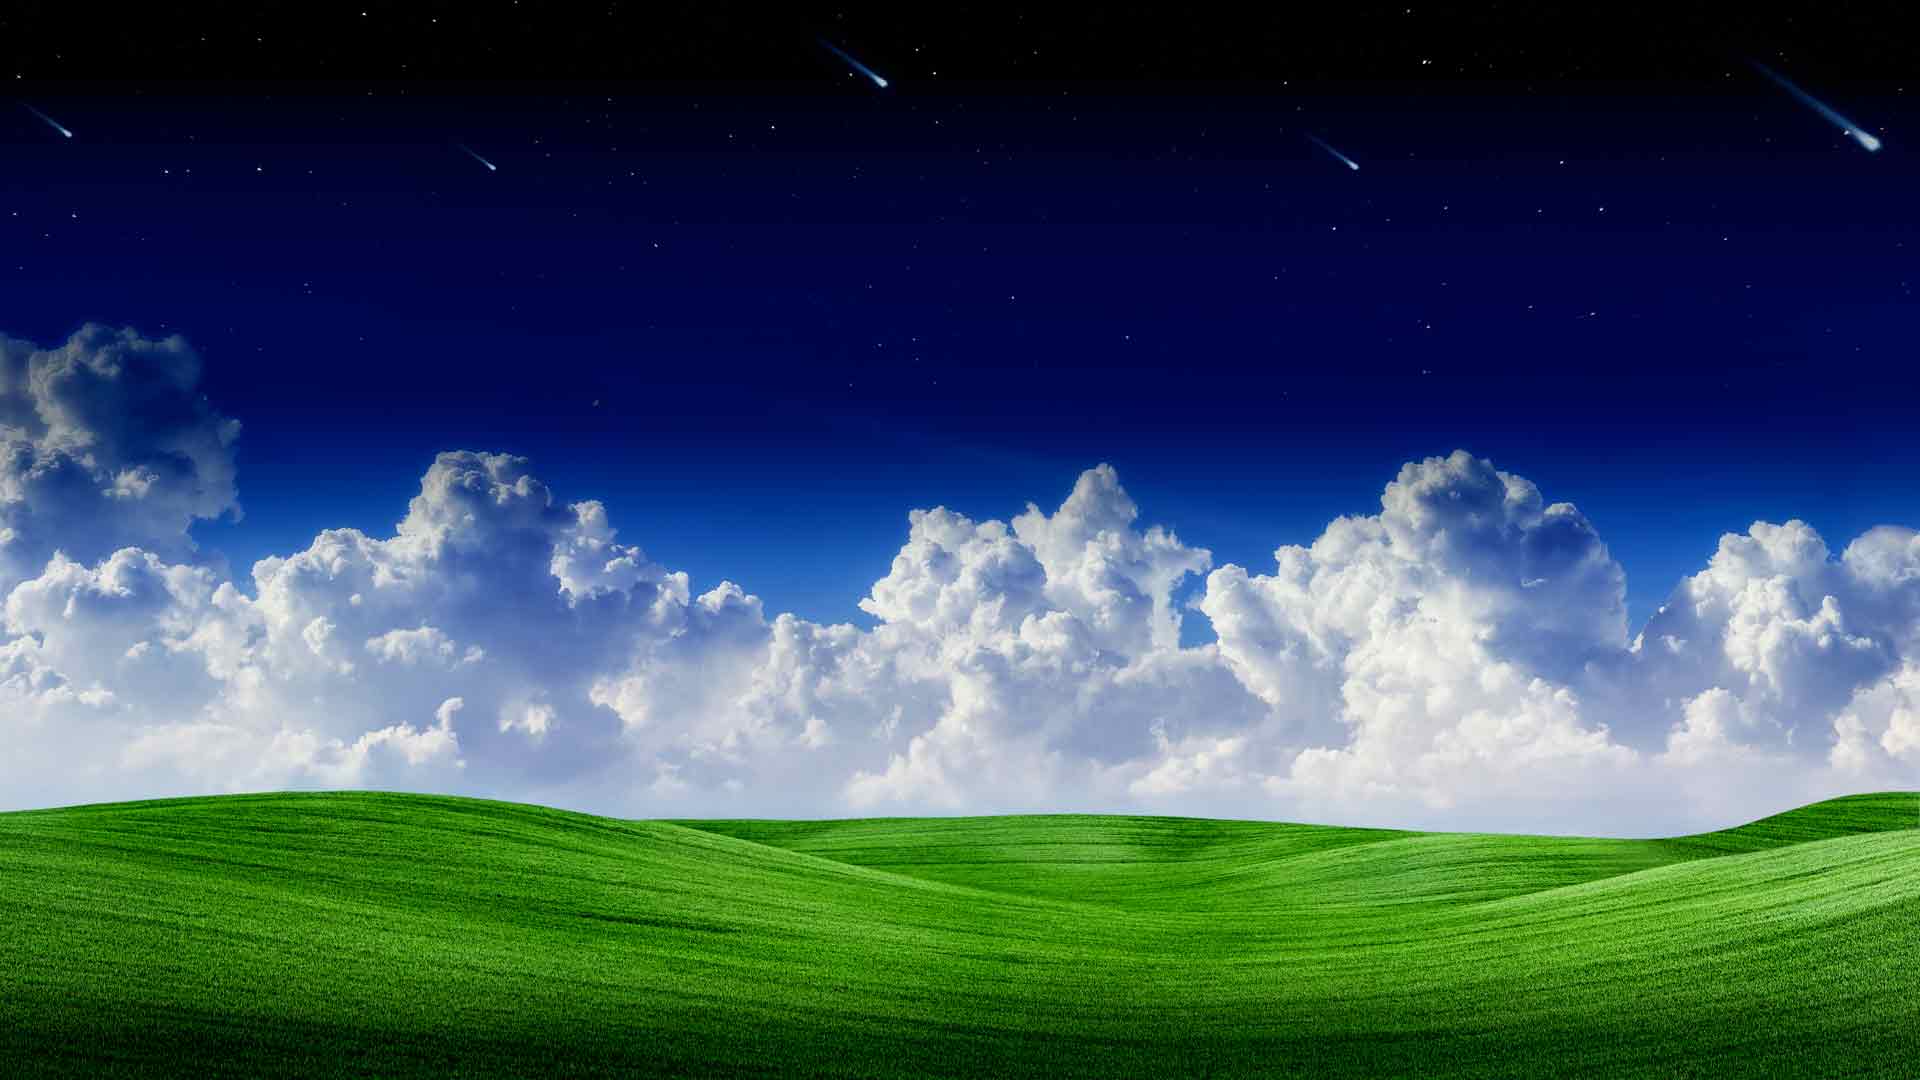 风景,云彩,绿草,星空,流星,蓝天,风景,夏天,风景,全景,8k